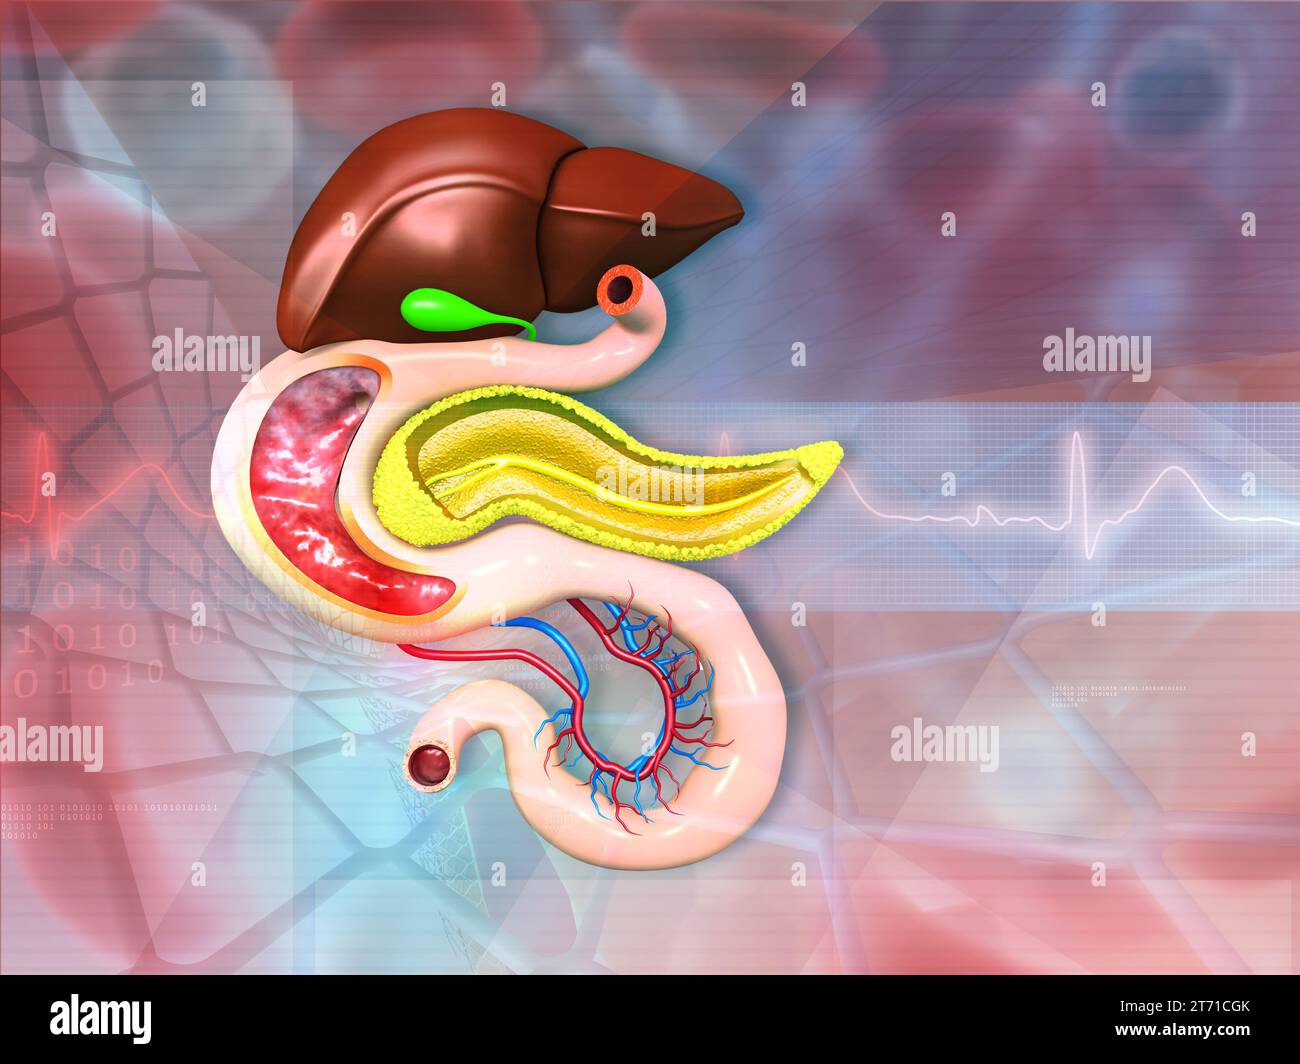 Anatomia dell'apparato digerente umano su sfondo medico. illustrazione 3d. Foto Stock